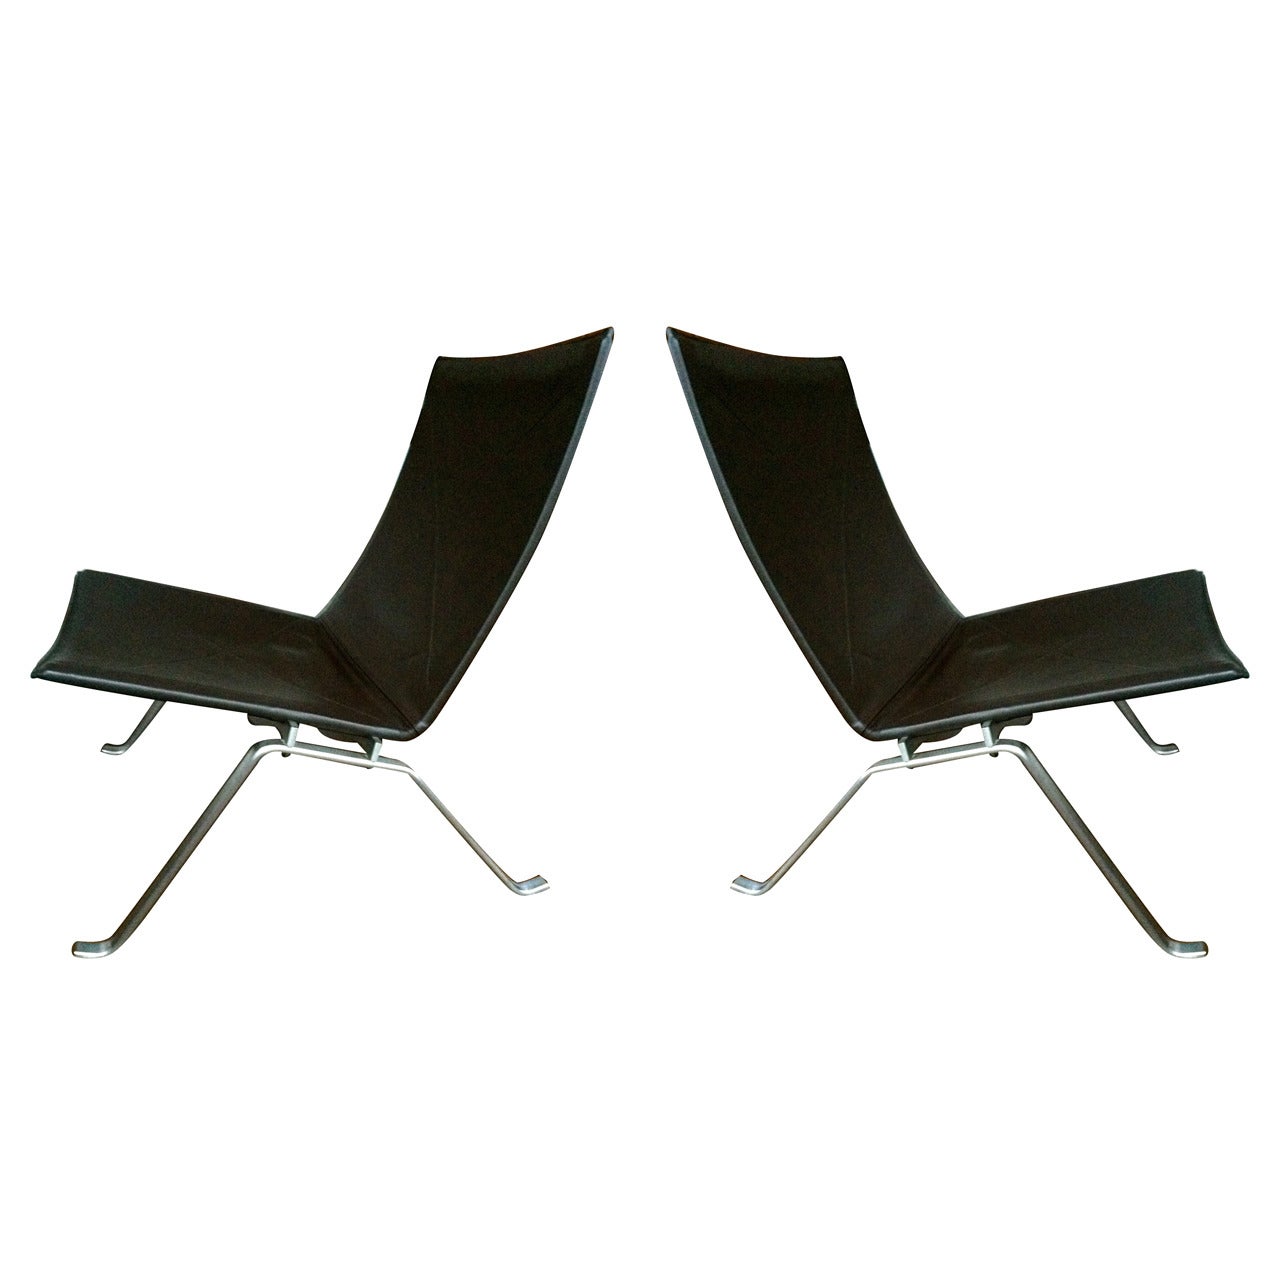 Pair of Poul Kaerholm PK22 chairs